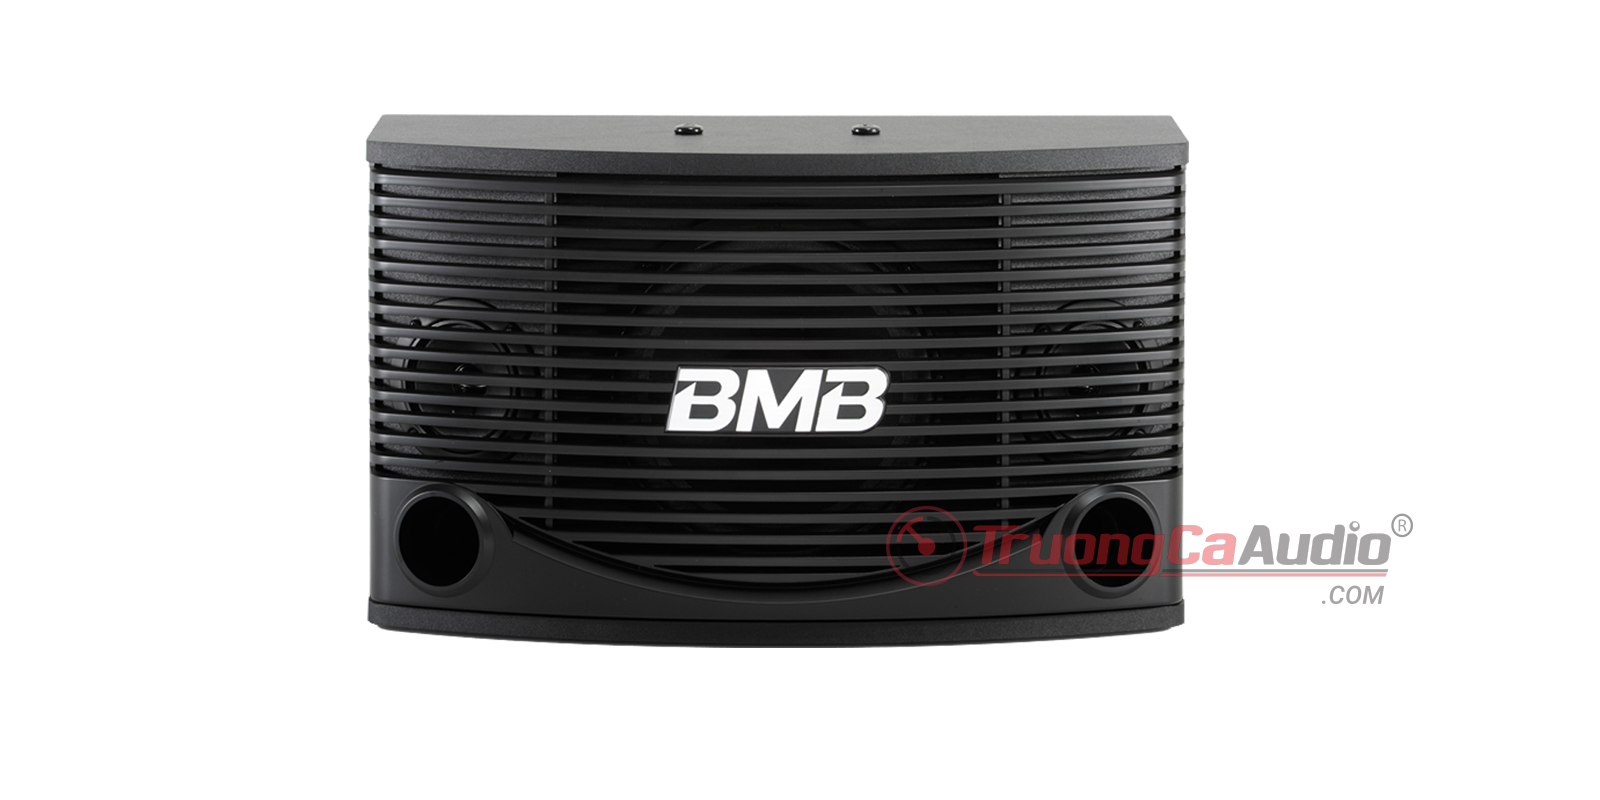 Loa BMB CSN 225SE là dòng sản phẩm cao cấp chuyên dùng cho dàn karaoke gia đình